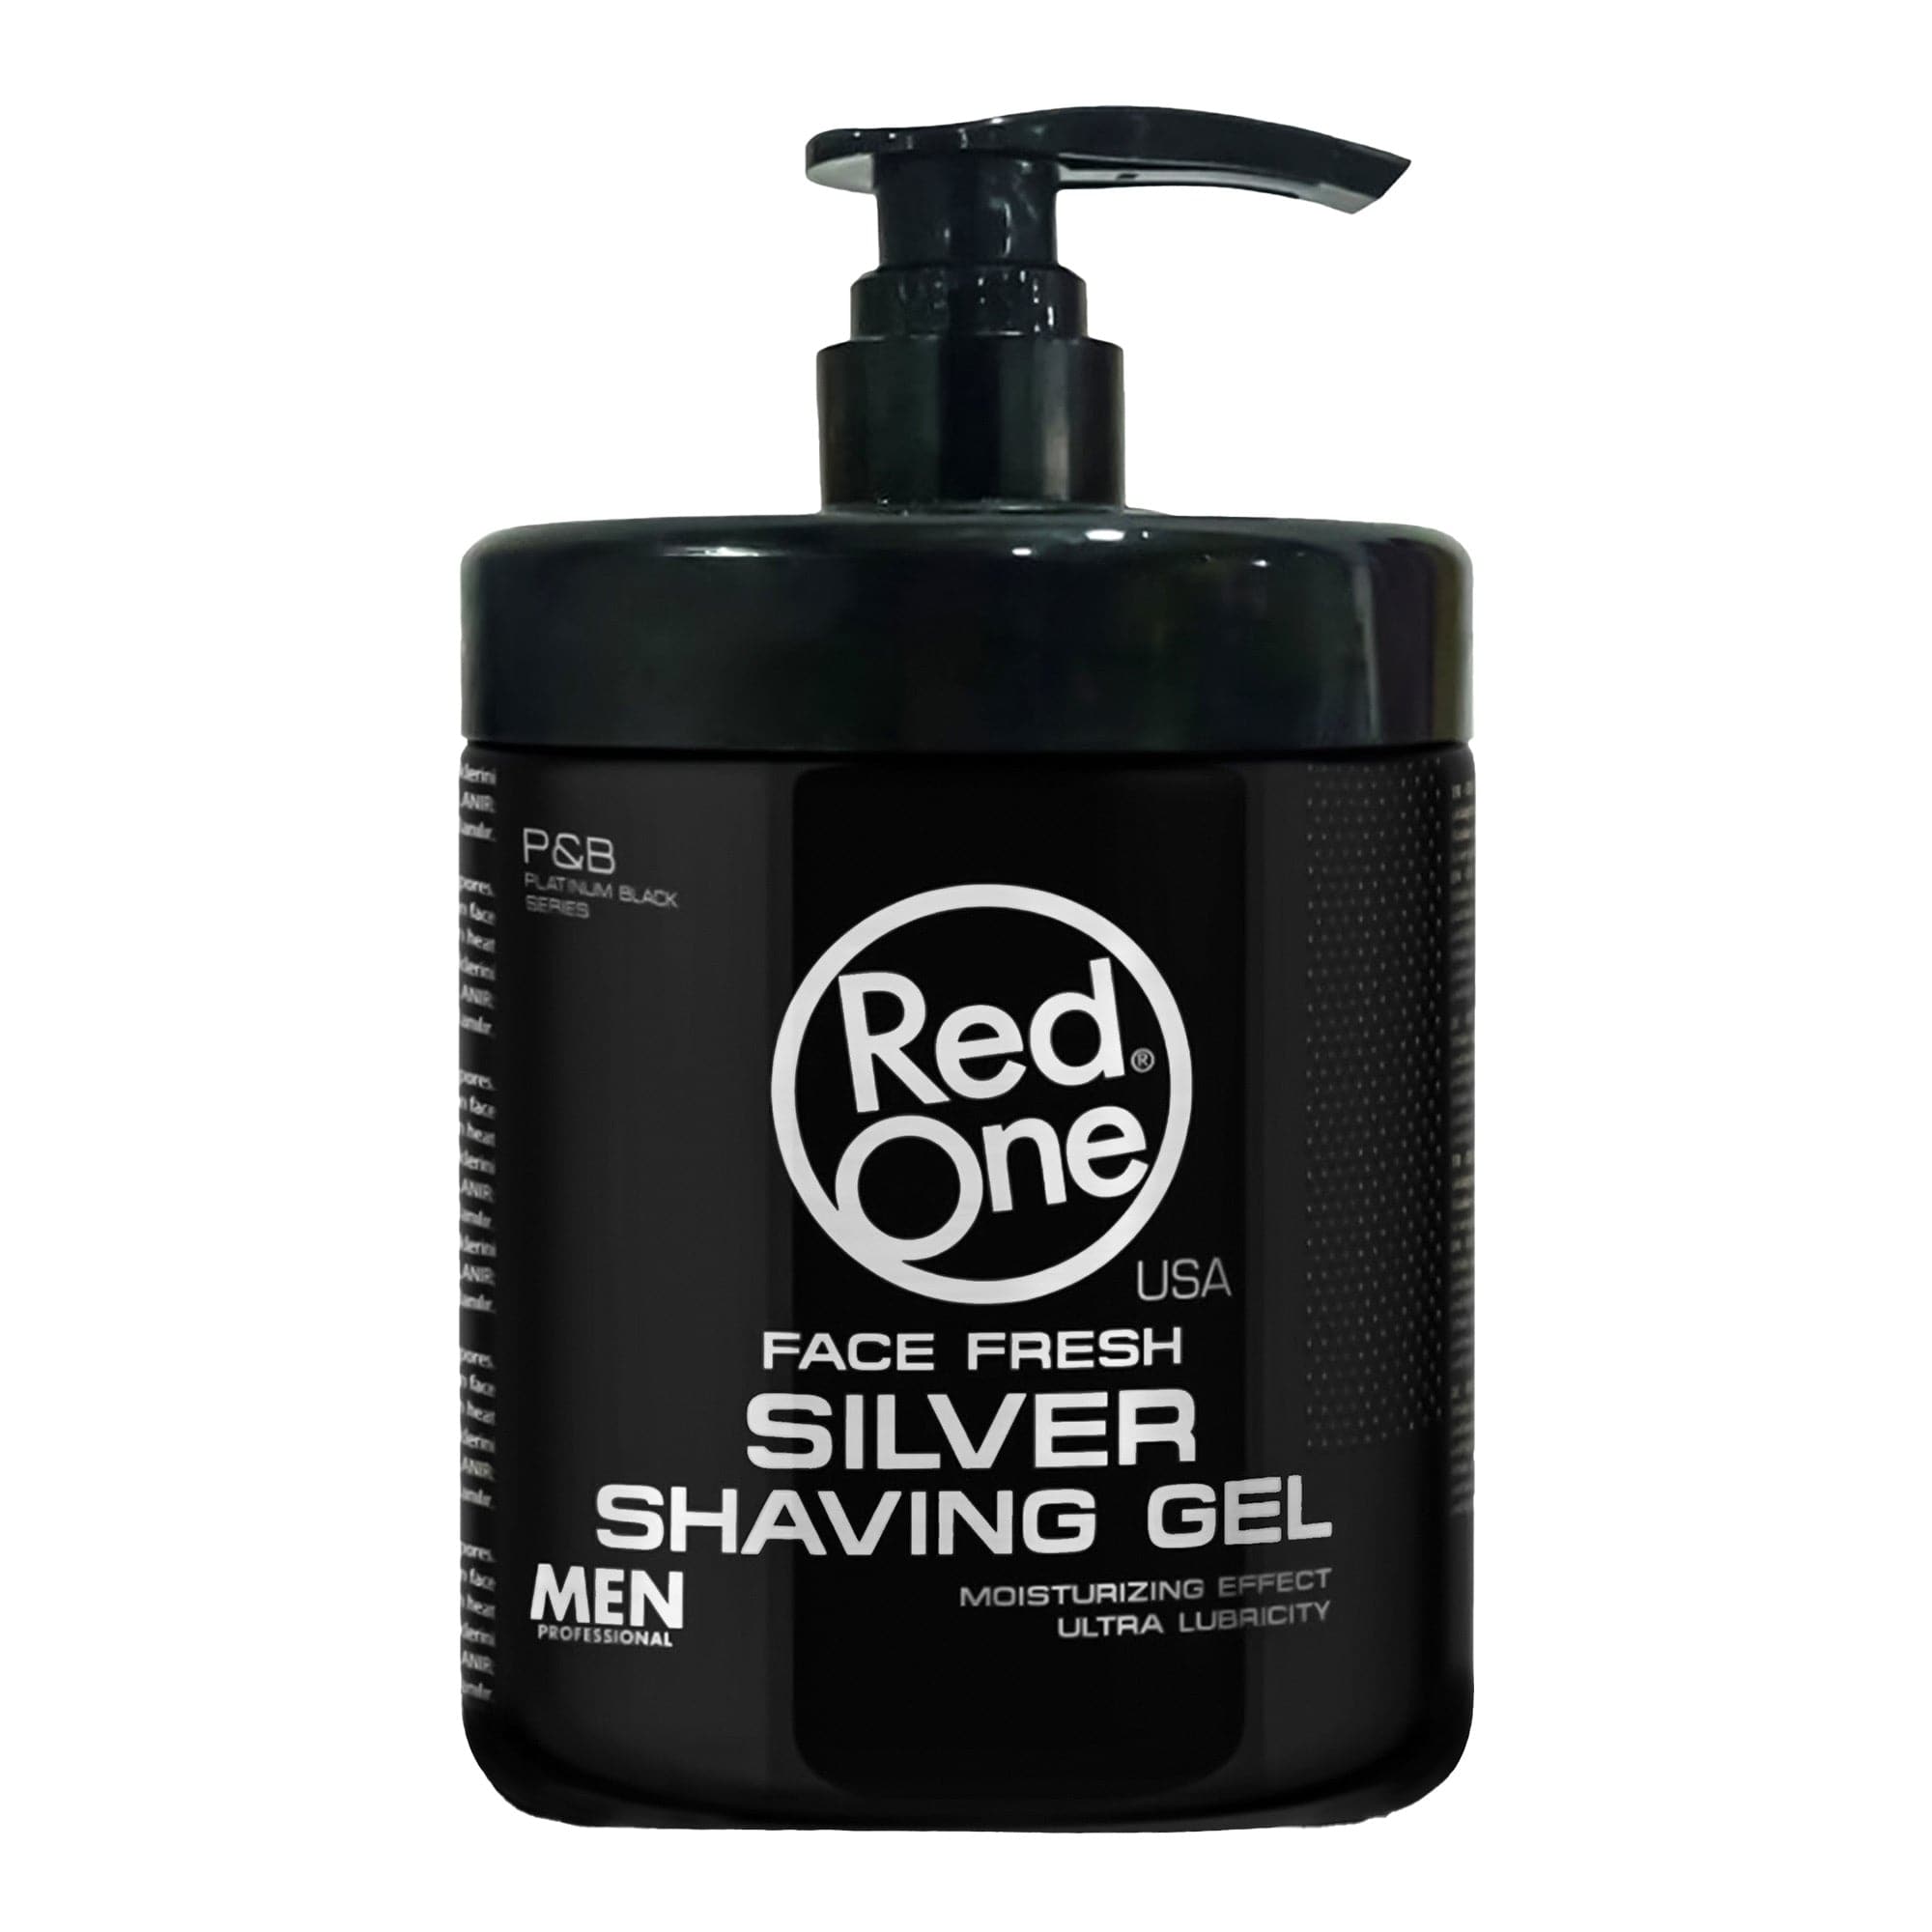 Redone - Shaving Gel Silver Face Fresh Moisturizing Effect 1000ml